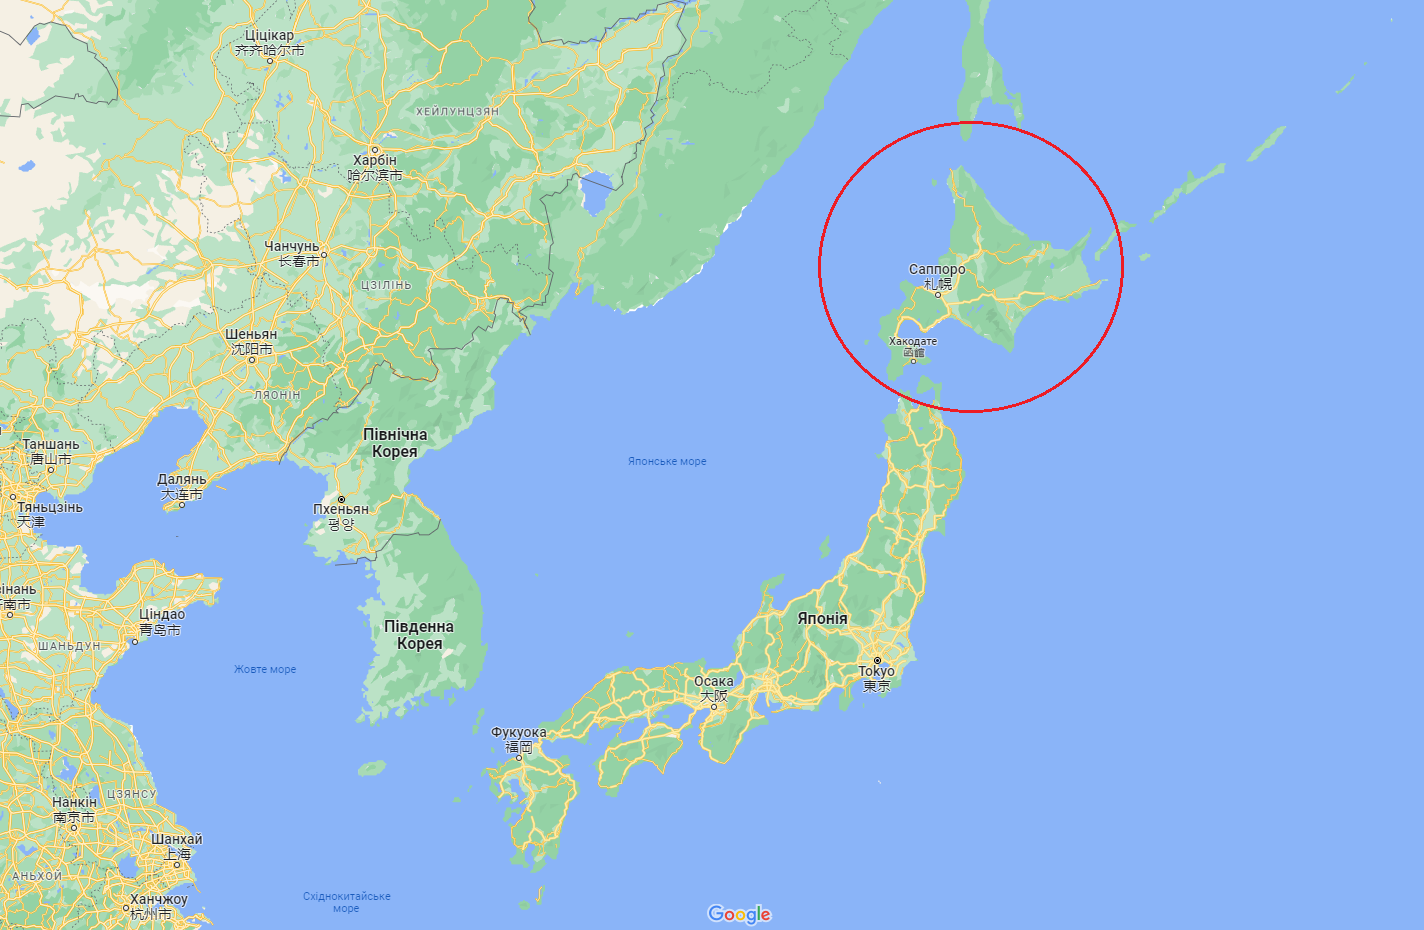 КНДР запустила новый вид баллистической ракеты: в Японии даже призывали к эвакуации на острове Хоккайдо